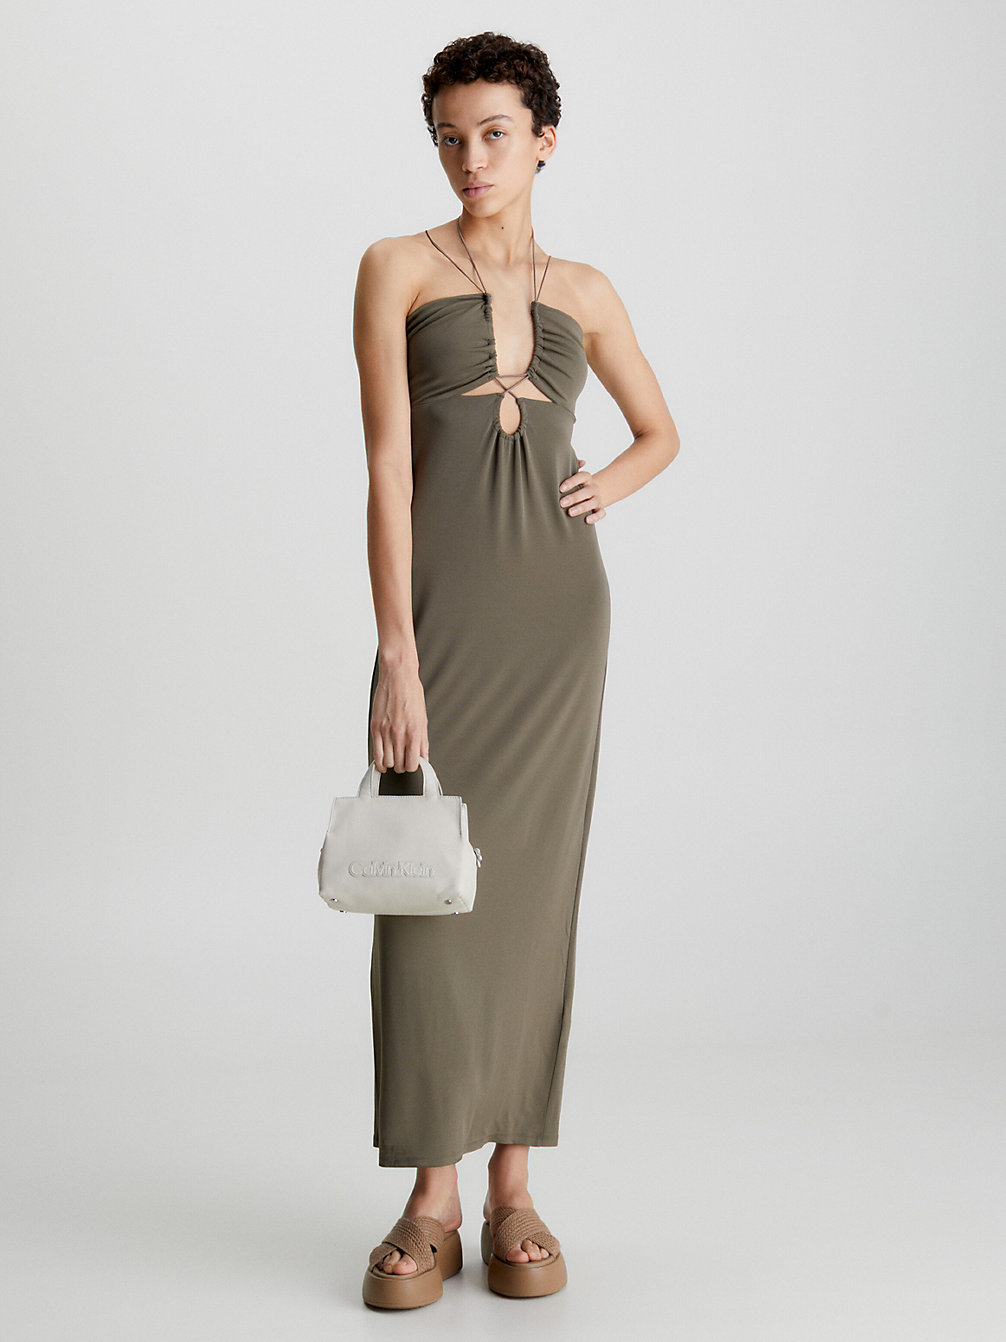 WALNUT Slim Strappy Jersey Slipkleid undefined Damen Calvin Klein